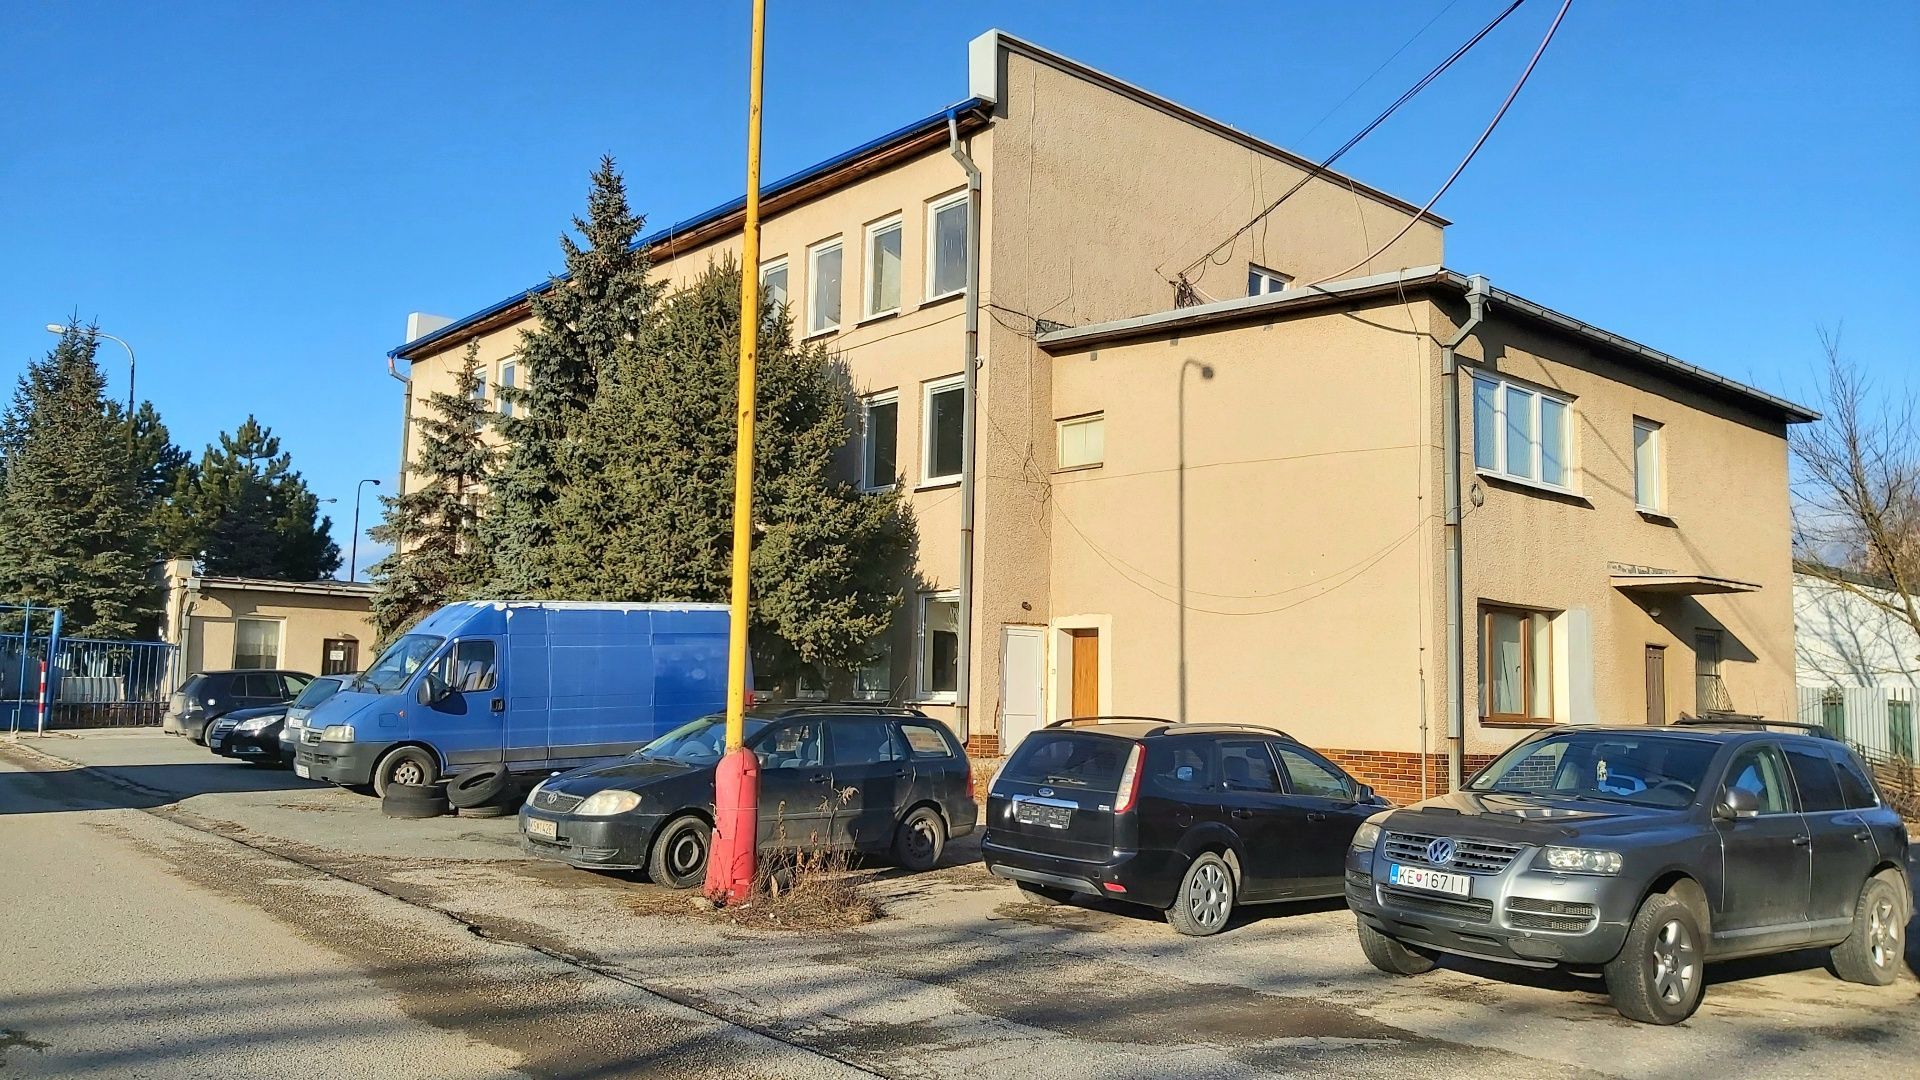 Prenájom kancelária,Magnezitárska ulica Košice, kompletne zrekonštruovaných od 20 - 100m2 s vlastným parkovaním, Magnezitárska ulica Košice